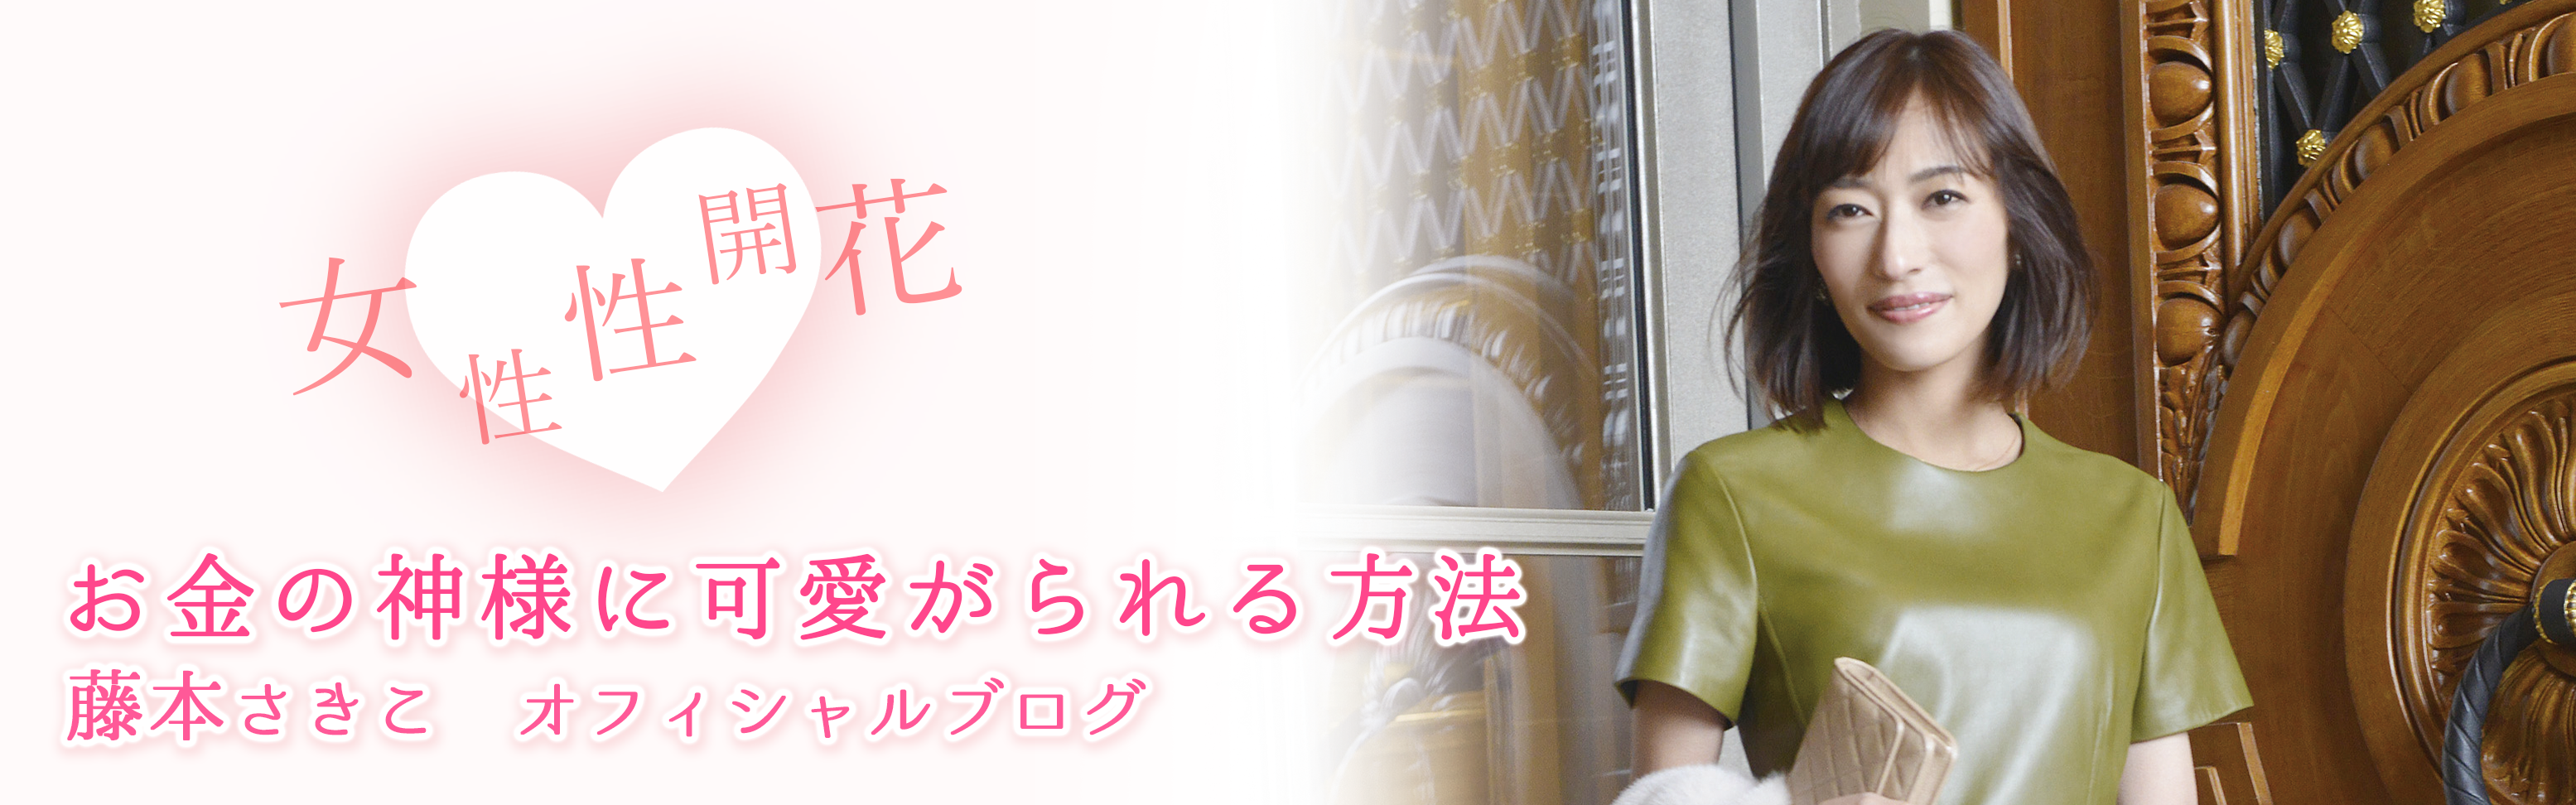 藤本さきこオフィシャルブログ「女性性開花♡お金の神様に可愛がられる方法」